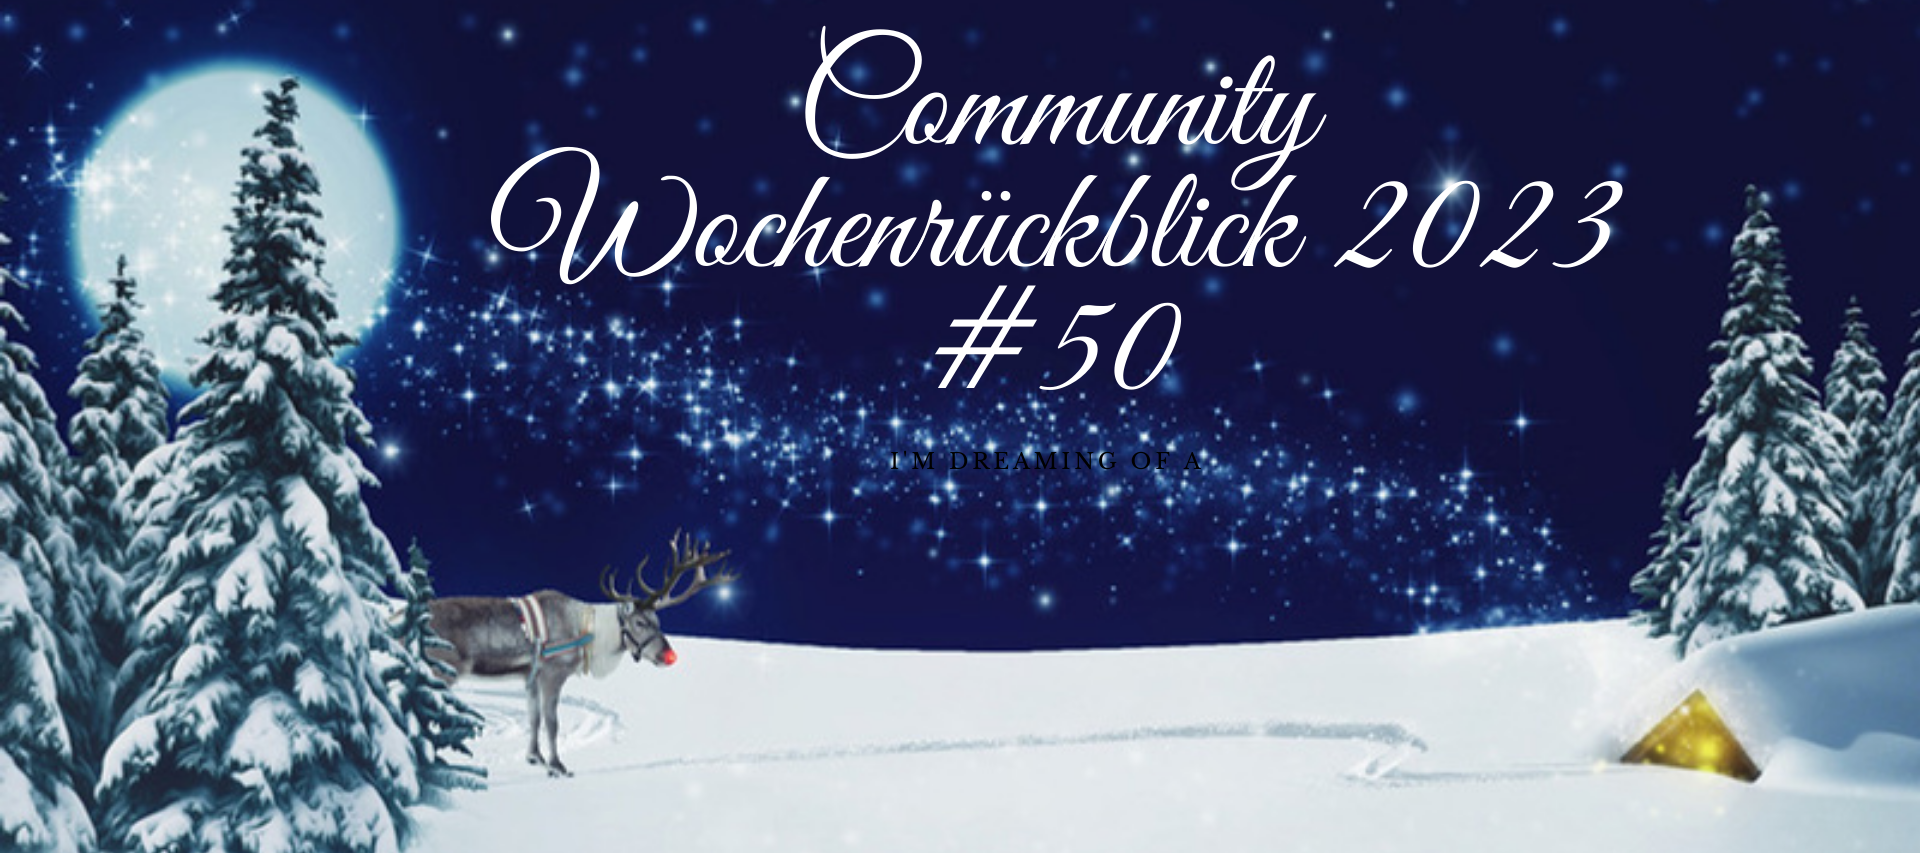 Community Wochenrückblick 2023 #50 - Es weihnachtet sehr 🎄